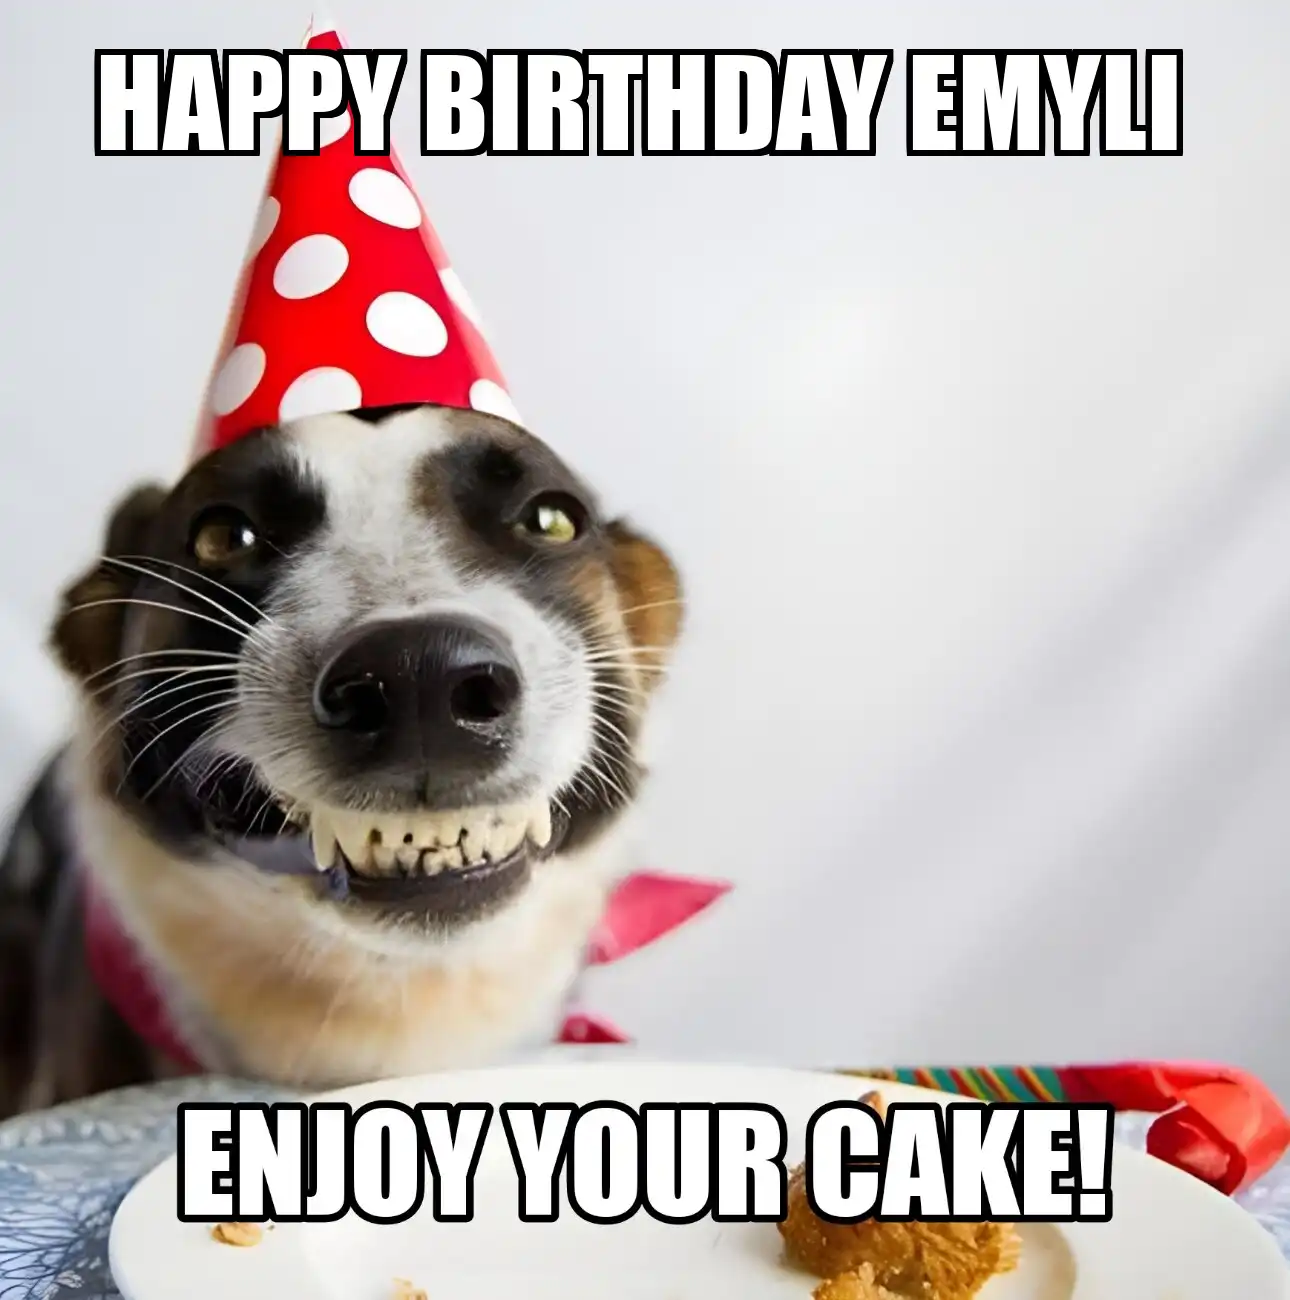 Happy Birthday Emyli Enjoy Your Cake Dog Meme